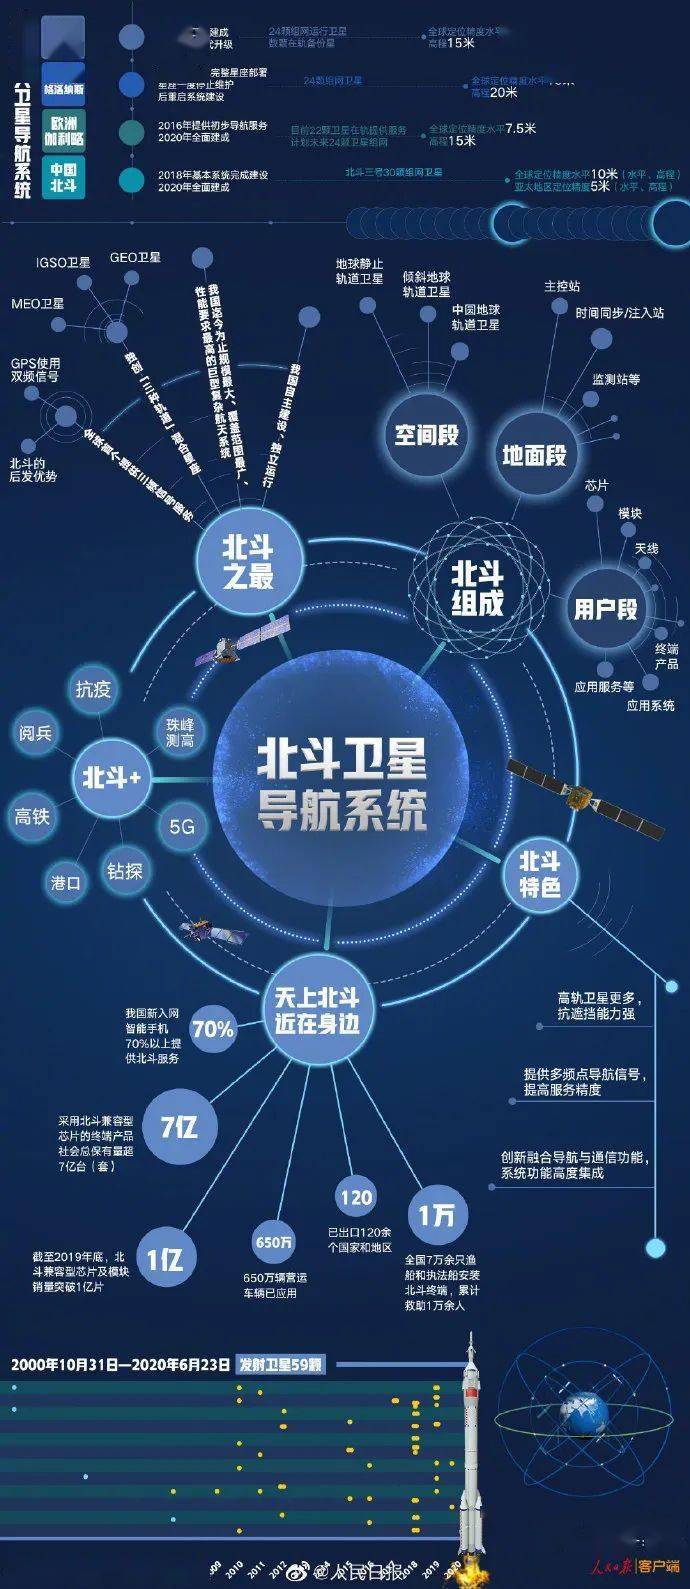 北京船舶通讯导航公司_广州自动化设备机器公司_广州卫航通讯导航设备公司